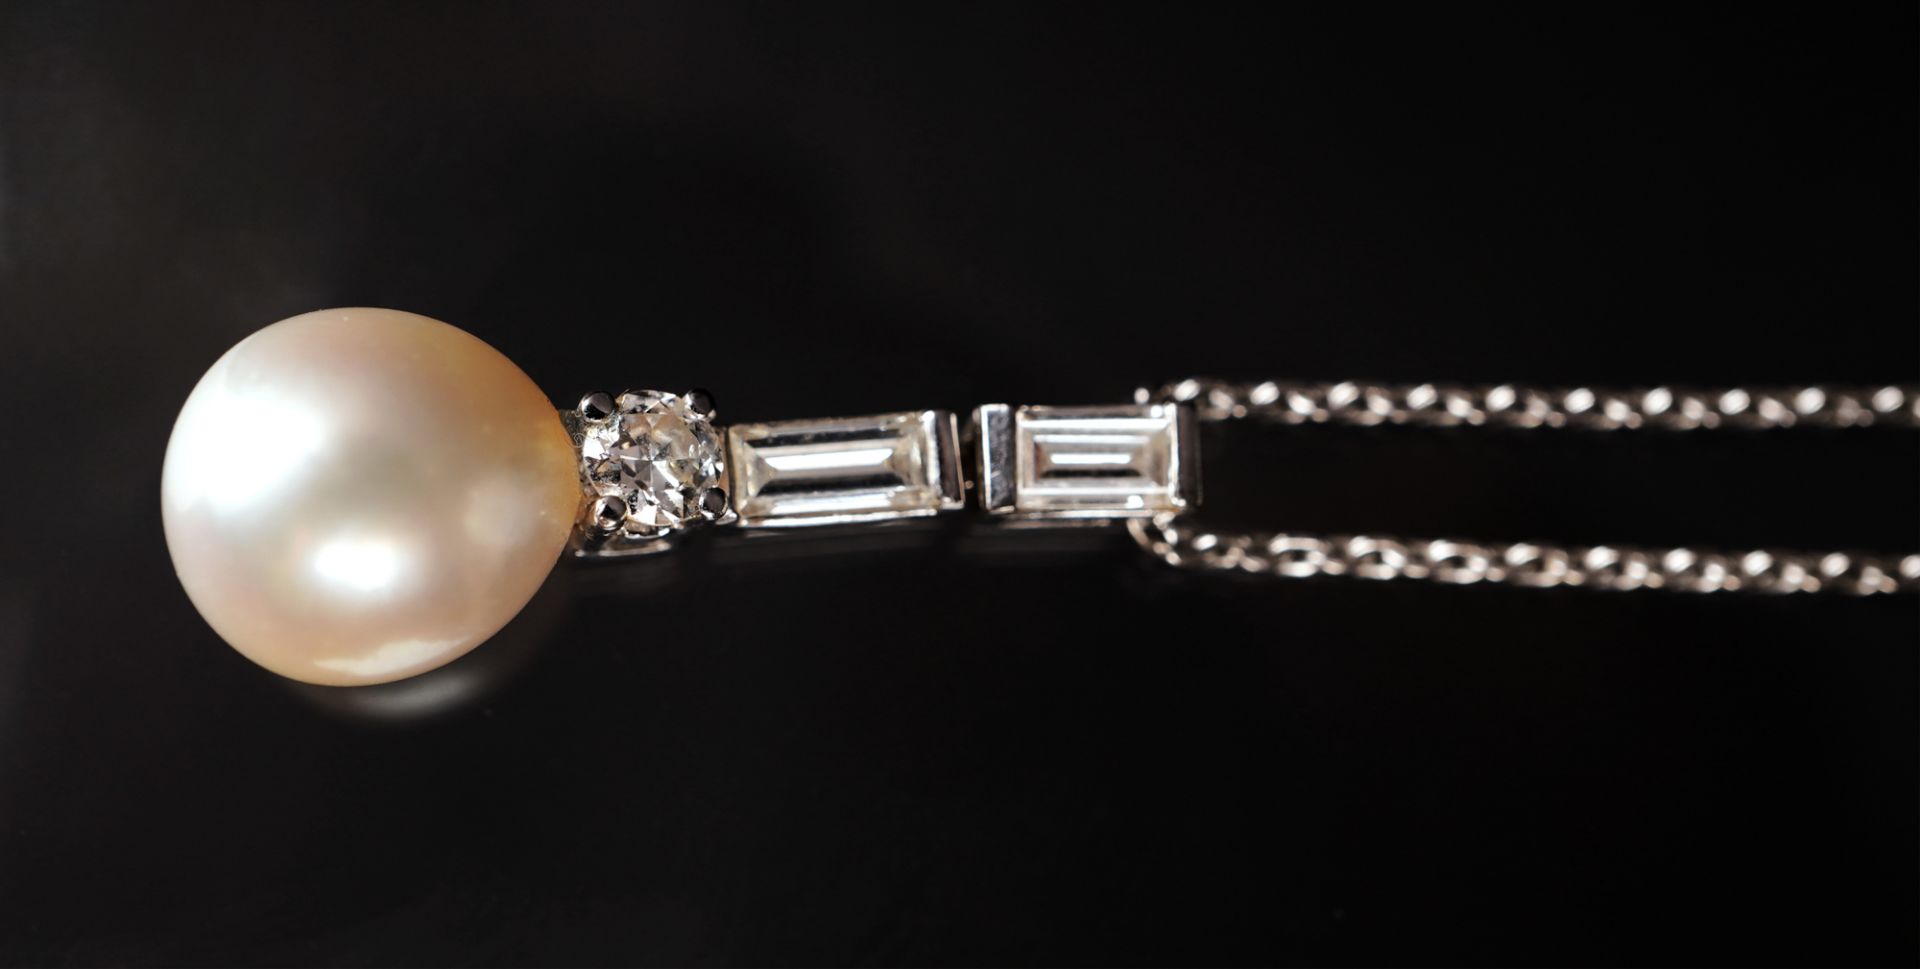 Anhänger mit Perle und Diamantbesatz an Kette, WG 585 - Image 5 of 6